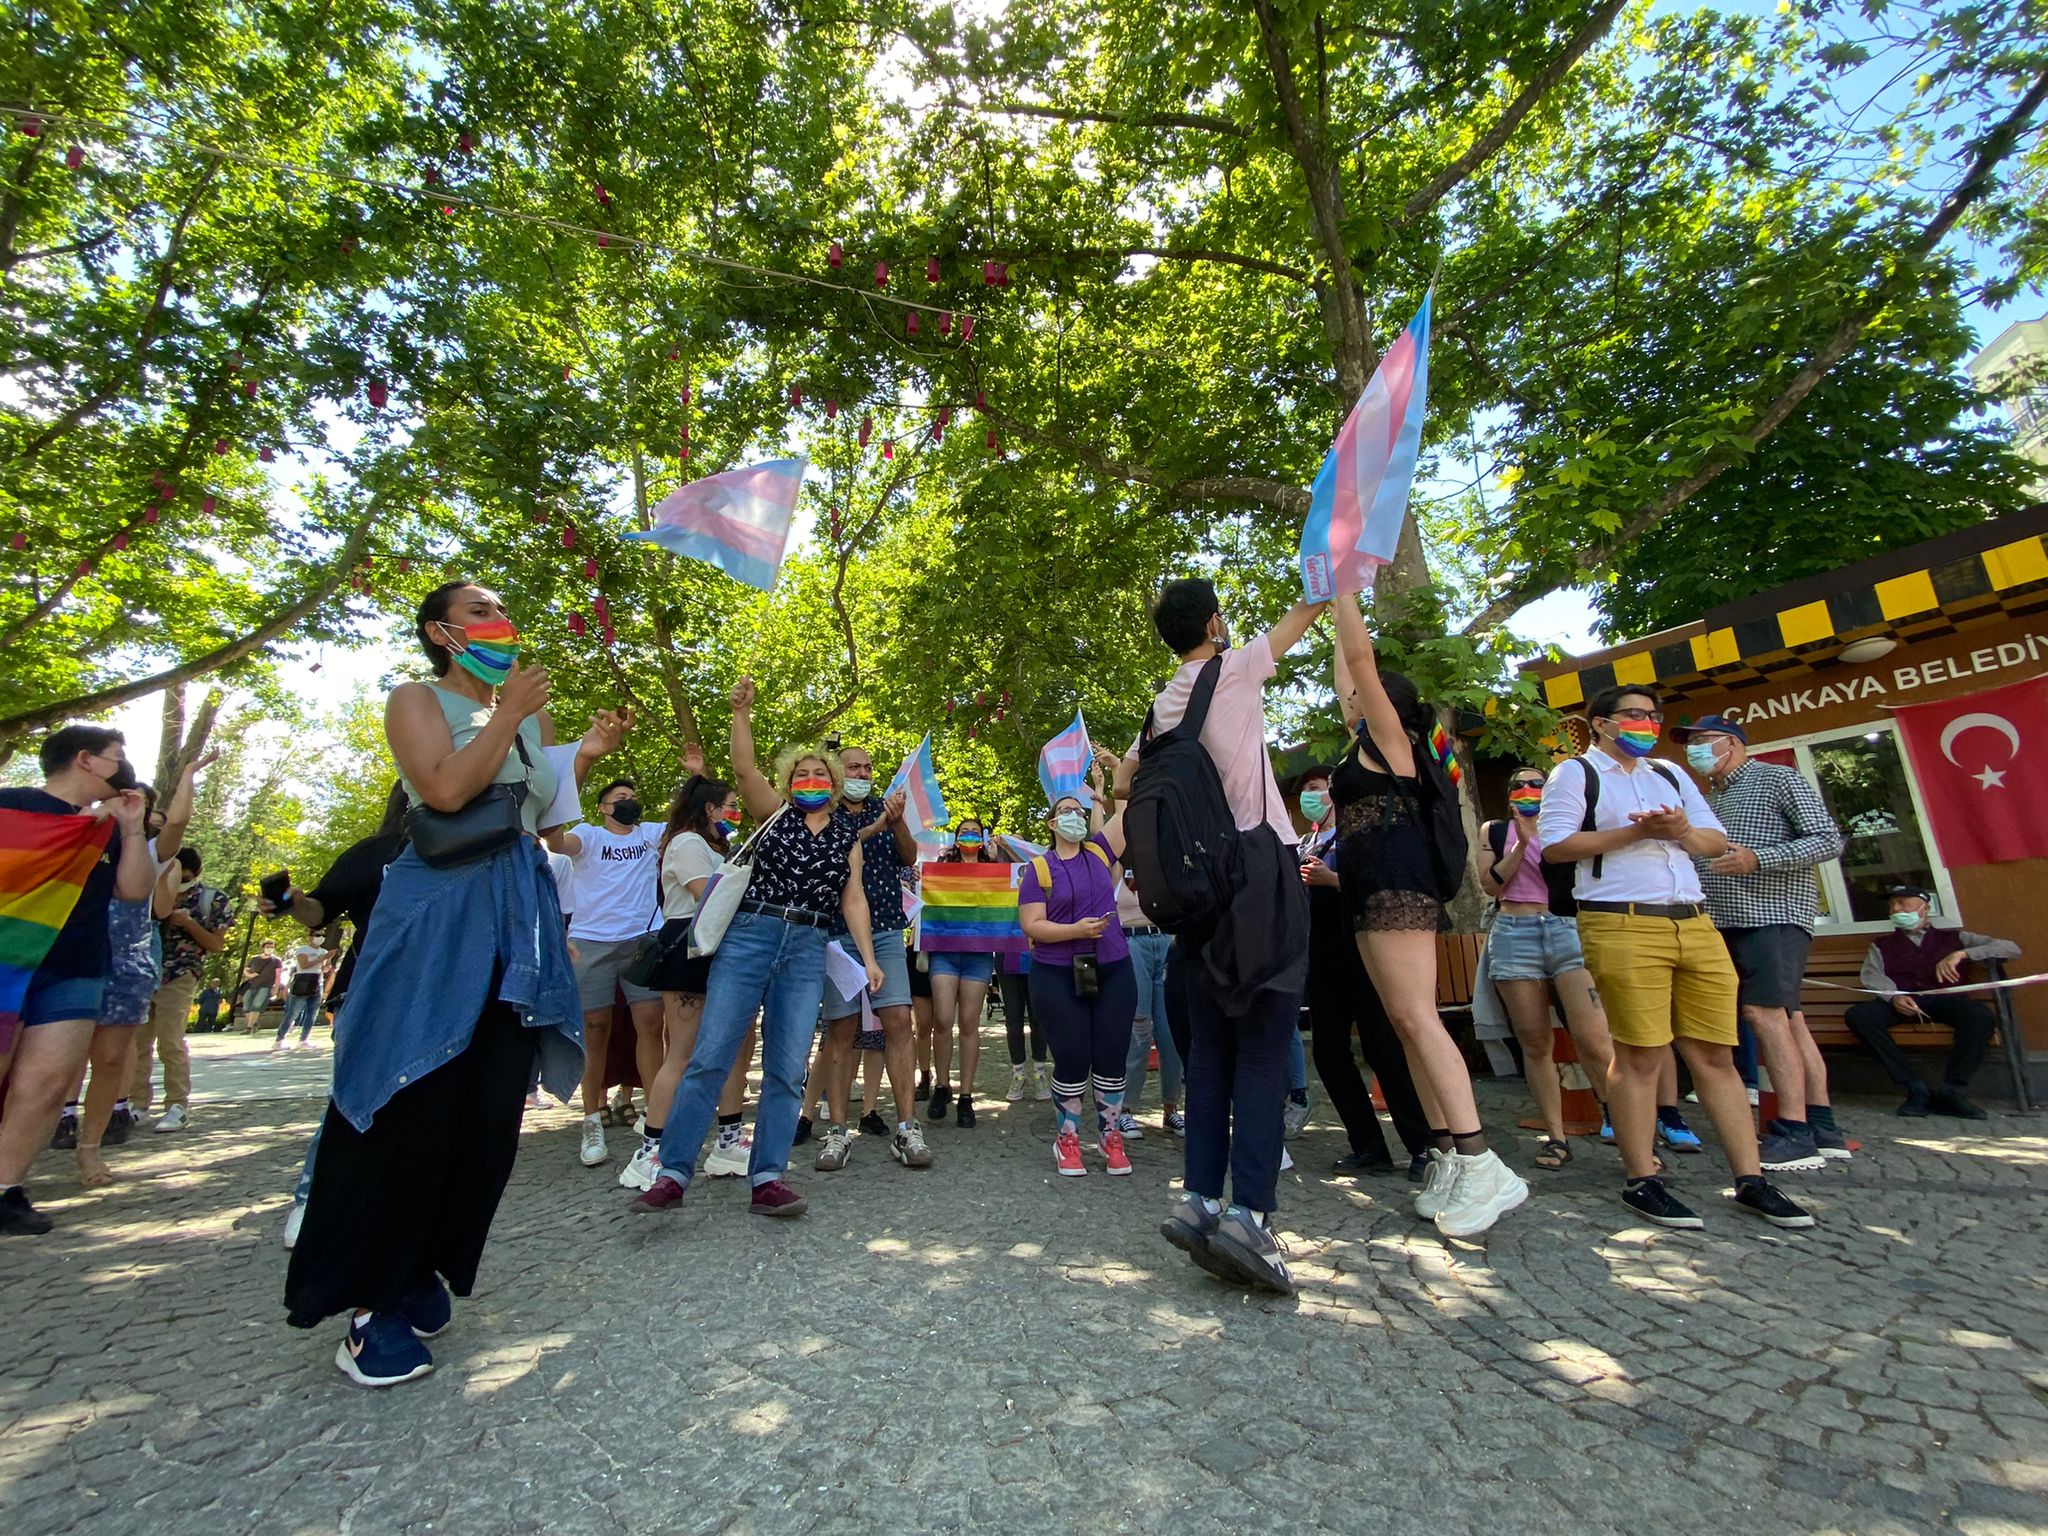 Ankara Onur Yürüyüşü: “Ankara’daki lubunyalar olarak burada varlığımızı kutluyoruz” | Kaos GL - LGBTİ+ Haber Portalı